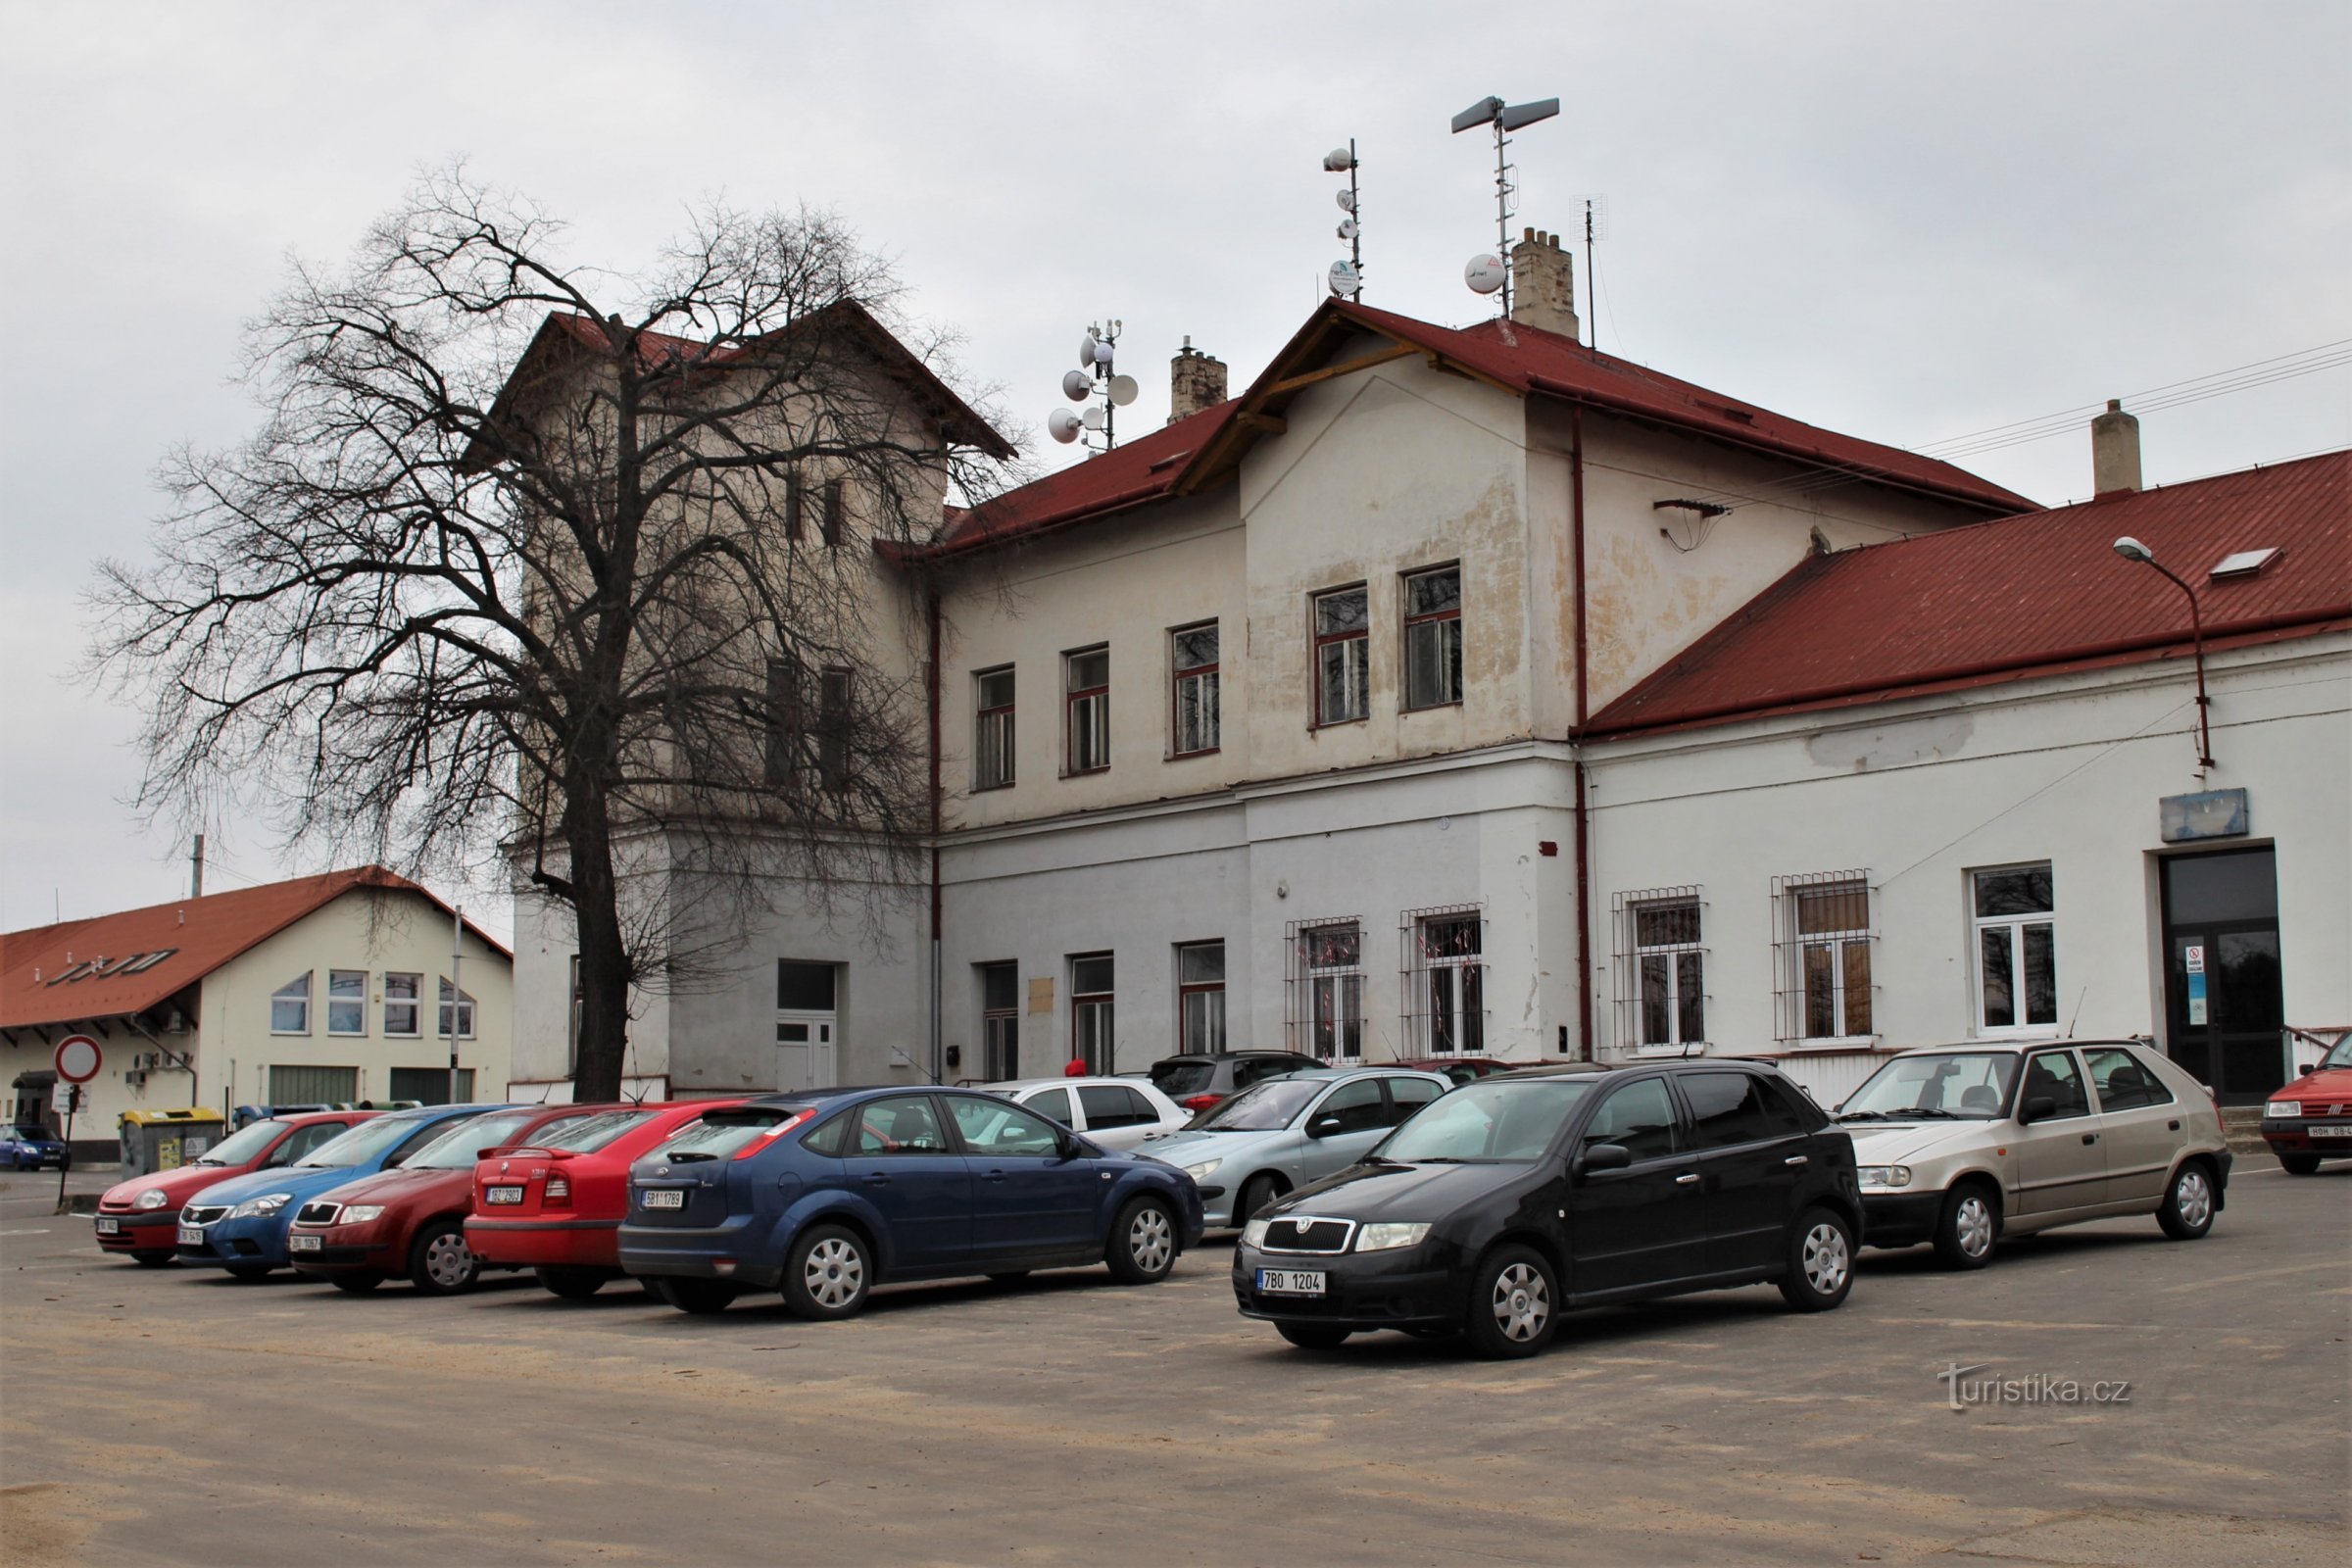 Moravské Písek állomás épülete előtt